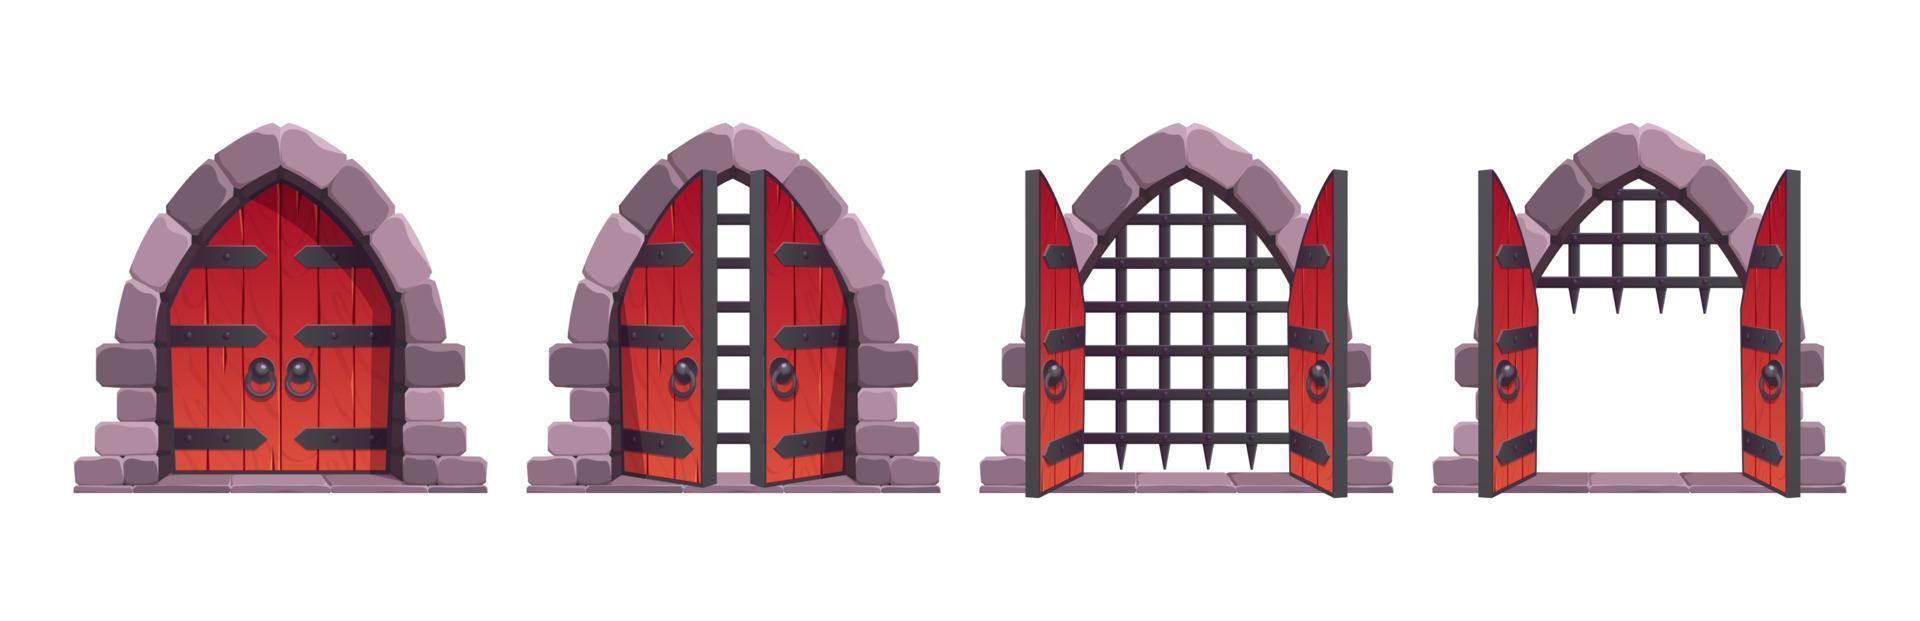 medeltida slott grindar öppen animering vektor tillgång